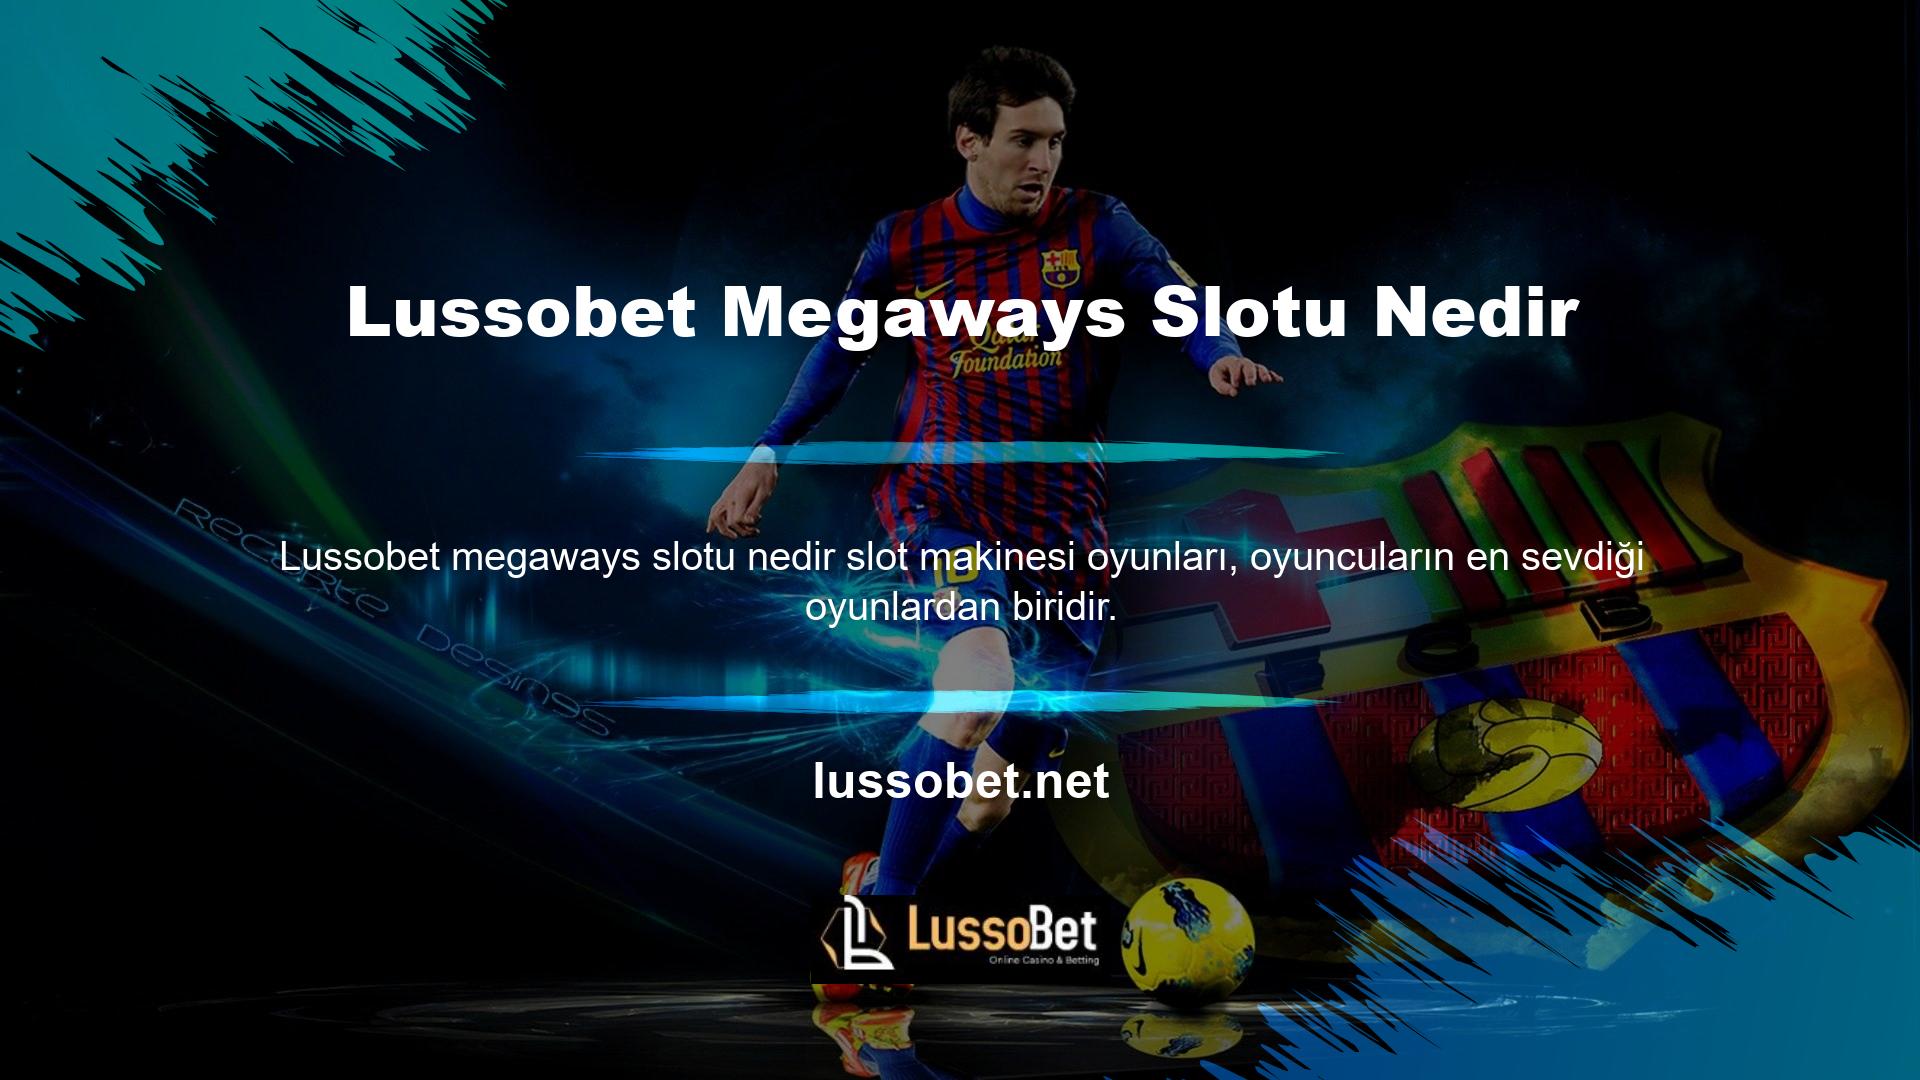 Geleneksel slotlara ek olarak, Lussobet, Lussobet Megaways slotlarını sunmaya devam ediyor